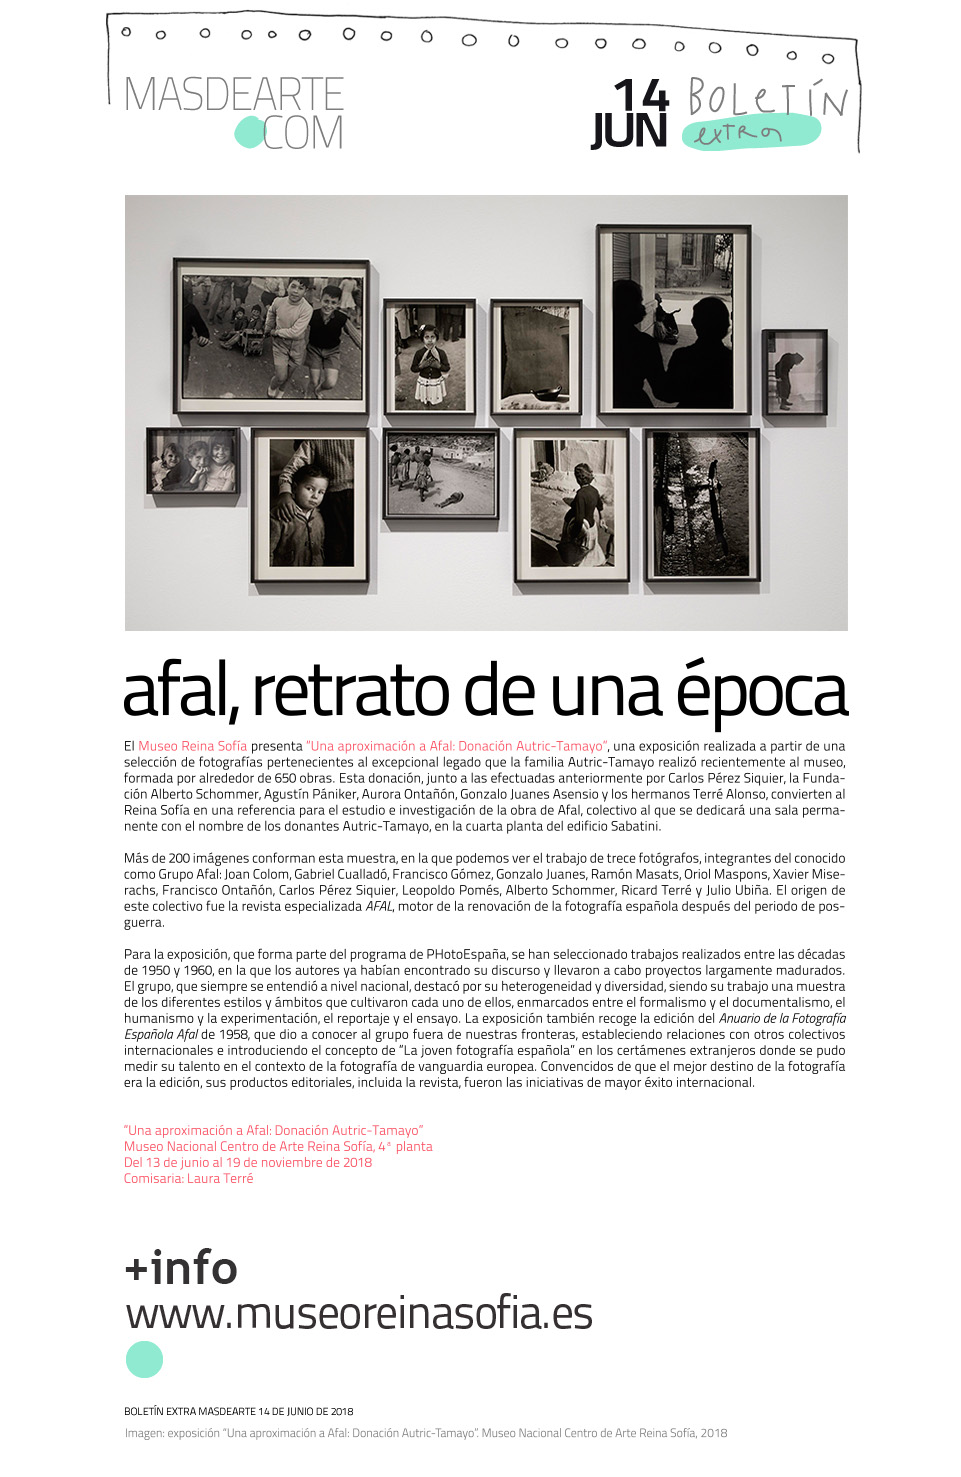 Exposición "Una aproximación a Afal. Donación
 Autric-Tamayo". Hasta el 19 de noviembre de 2018 en el Museo Reina Sofía